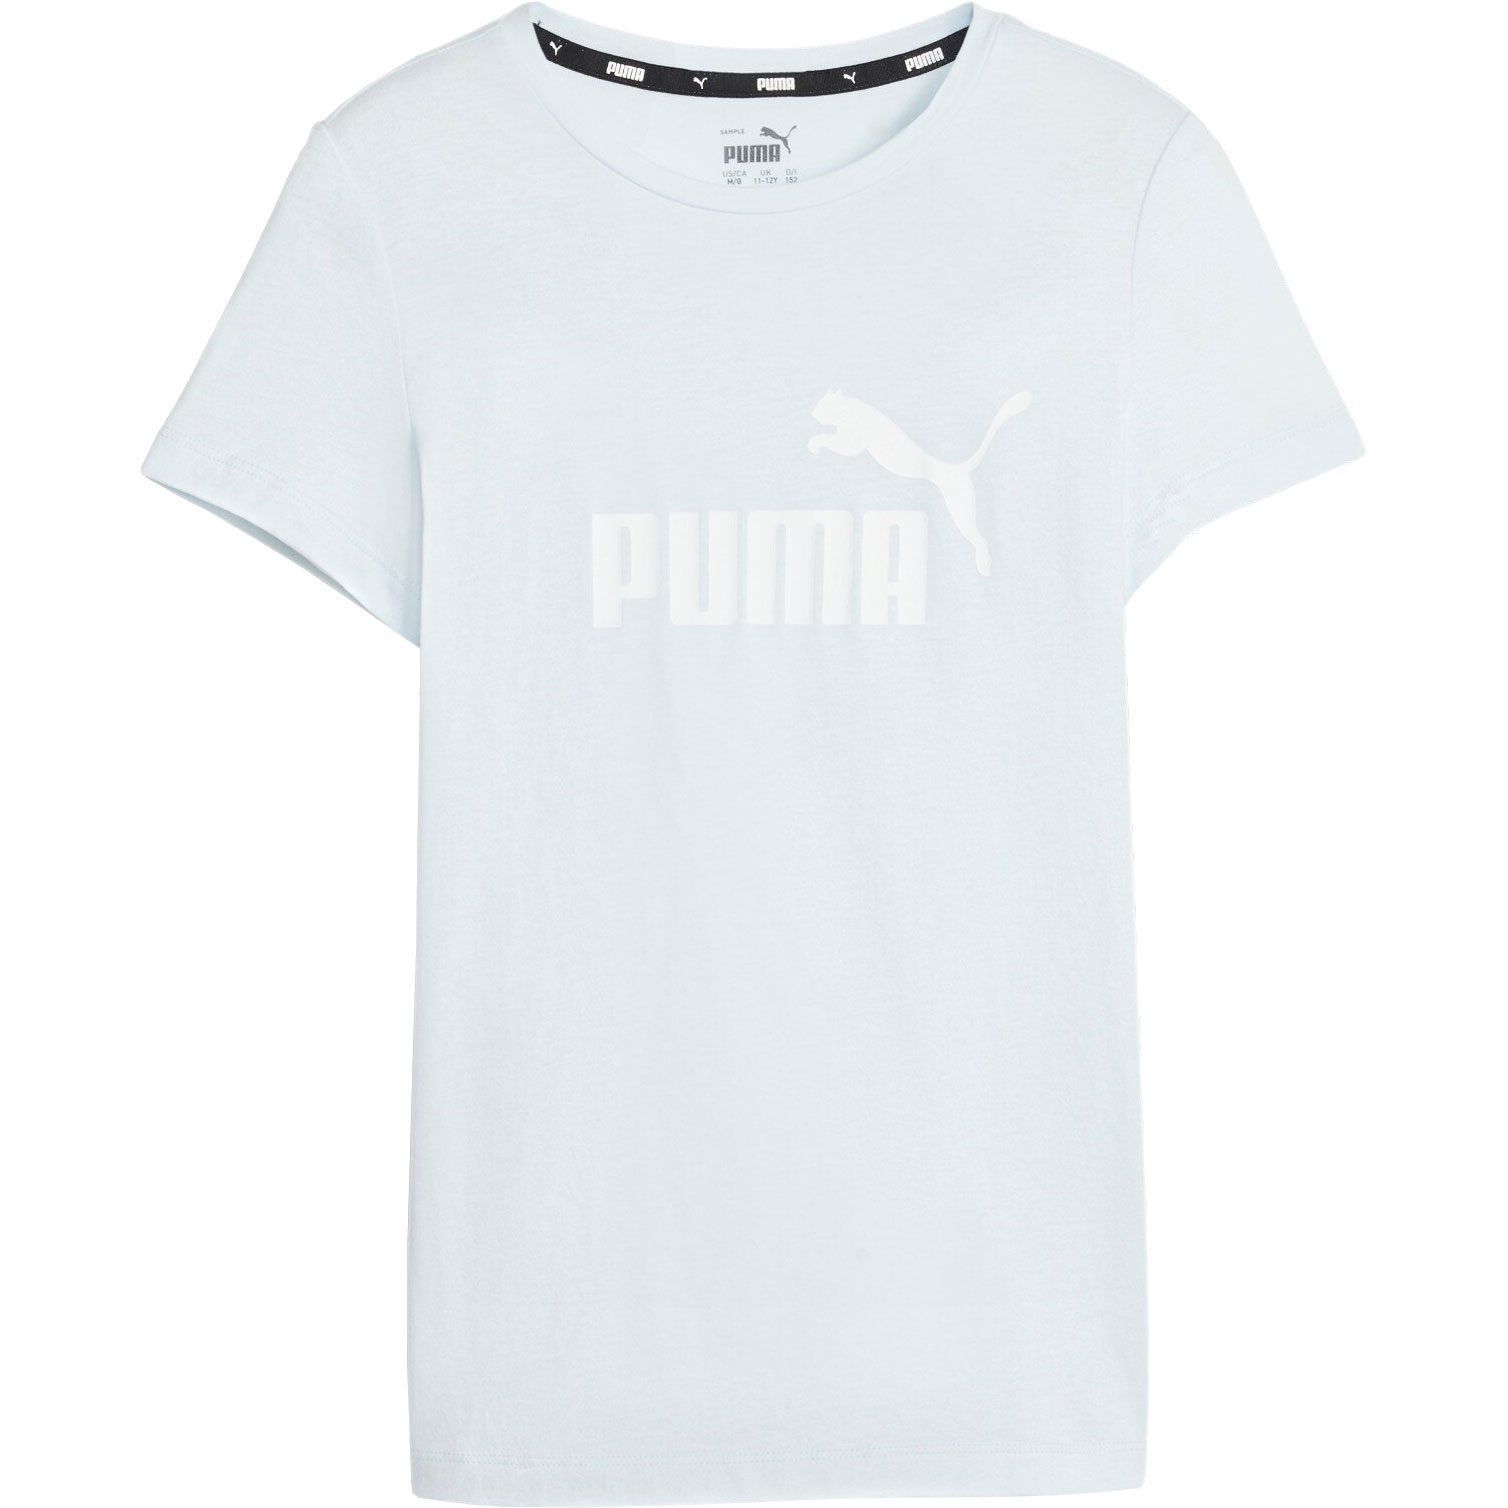 Mädchen Bittl Puma Esentails Logo T-Shirt blue kaufen im icy Sport Shop -